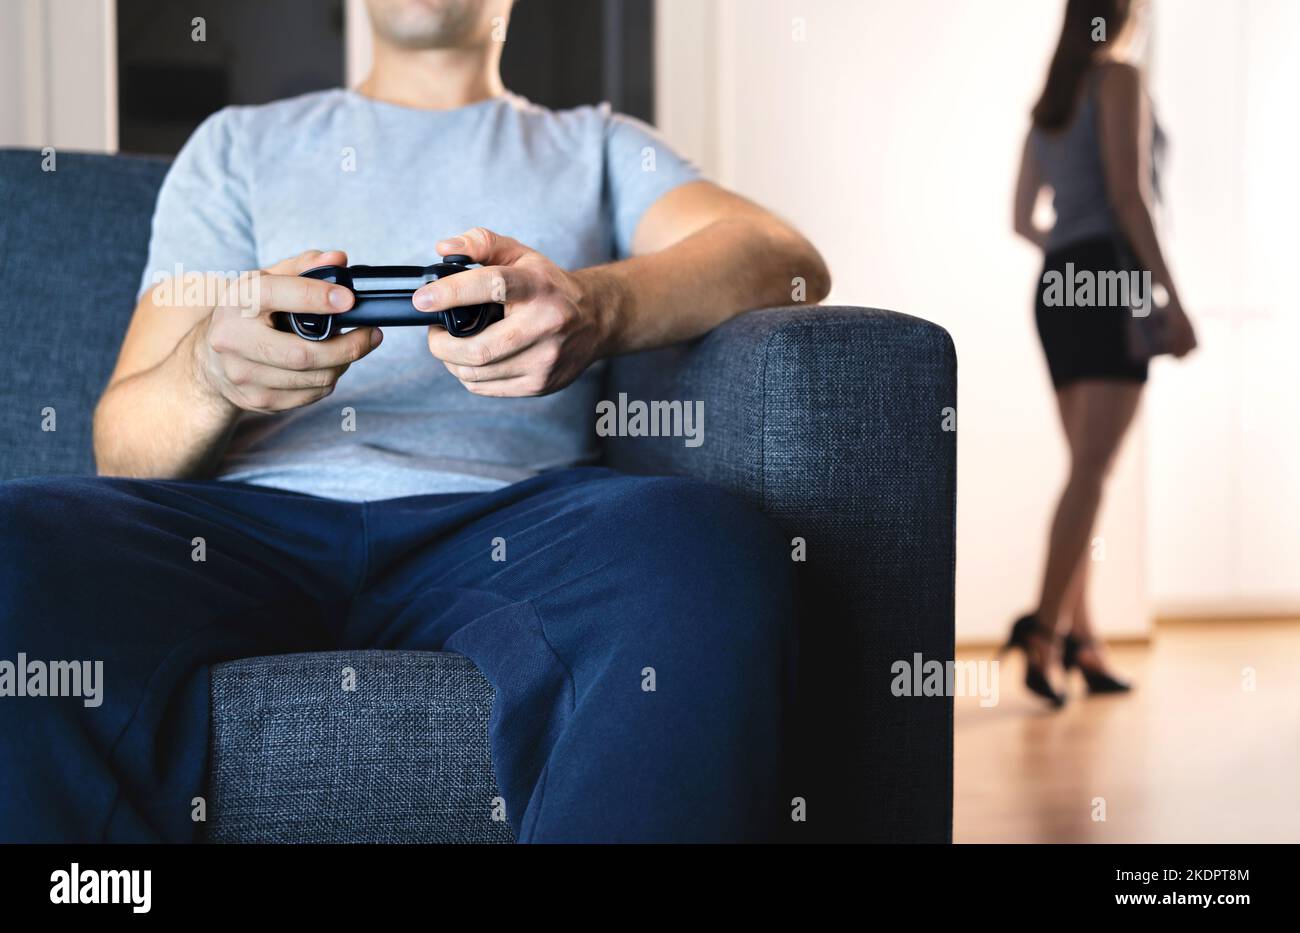 Couple dans le mariage lointain. Homme jouant à un jeu vidéo ignorant femme. Manque de connexion. Lutte de relation et crise. Mari paresseux sur le canapé. Banque D'Images